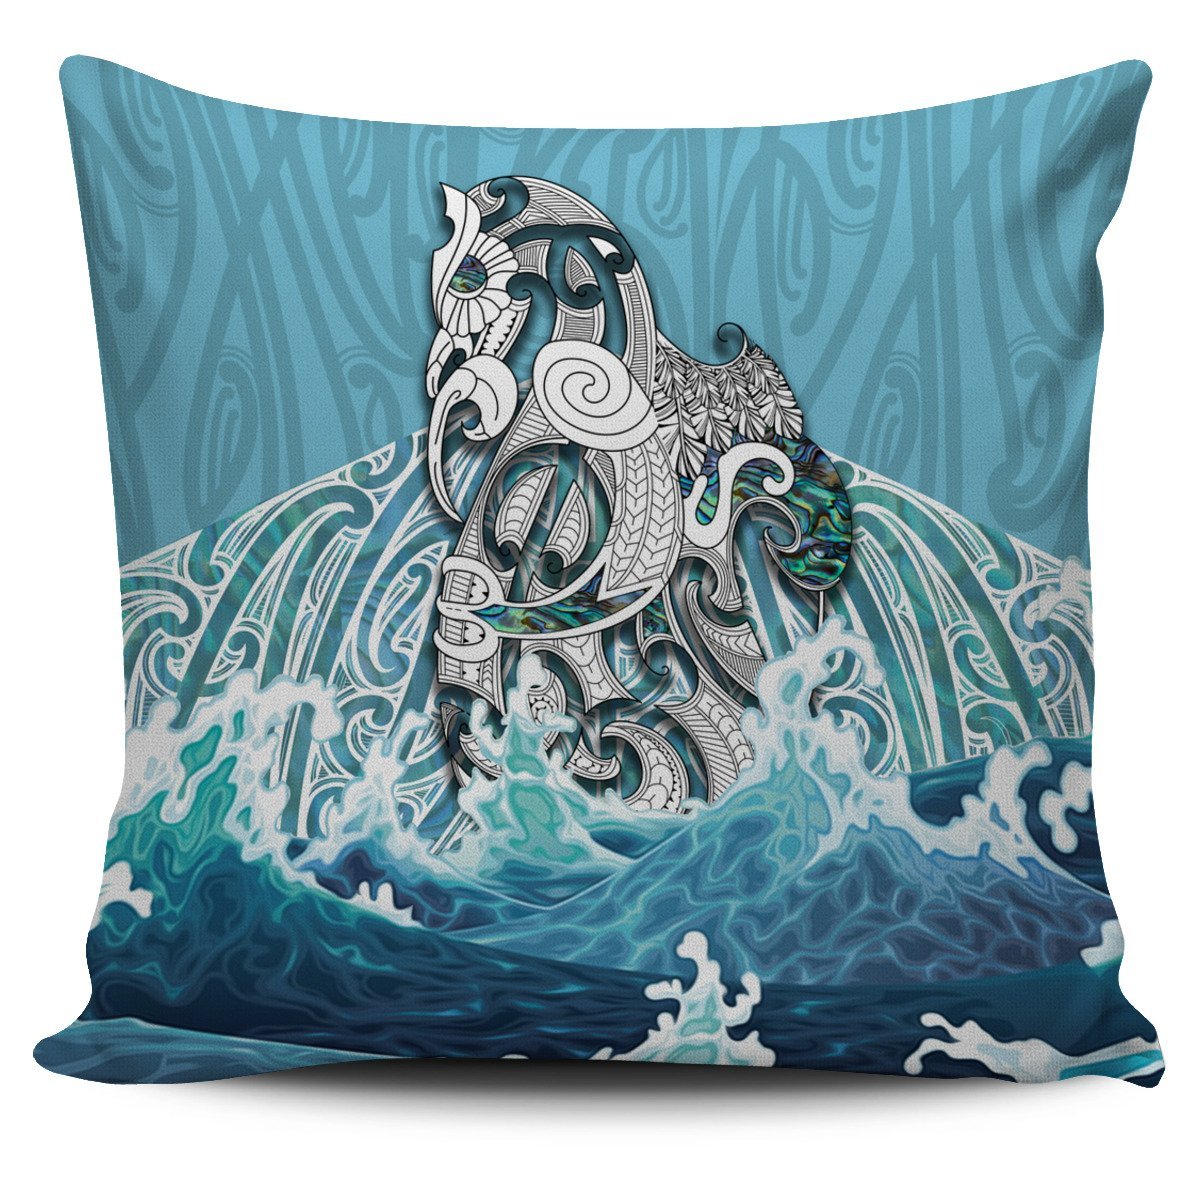 Maori Manaia The Blue Sea Pillow Cover - Polynesian Pride